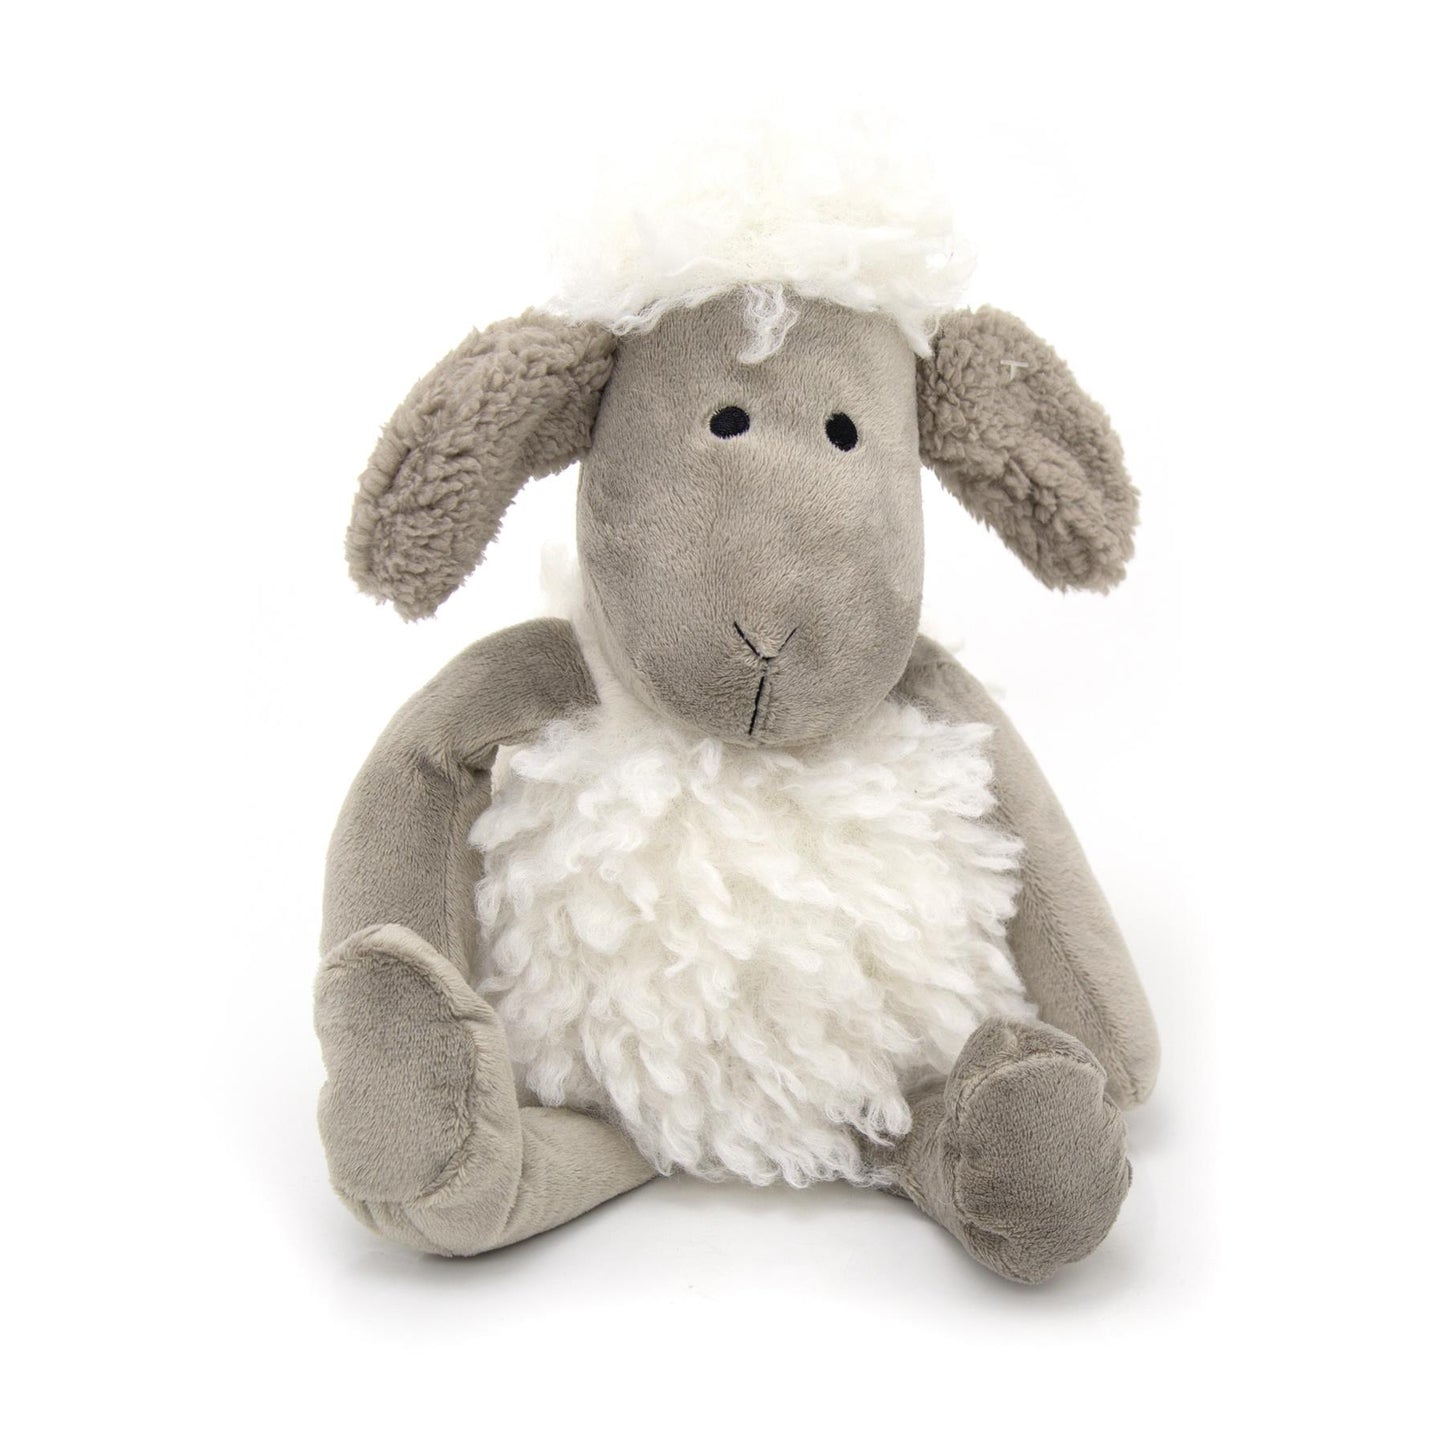 Cute Woolly Sheep Fabric Doorstop | Decorative Animal Door Stop - Grey Ears